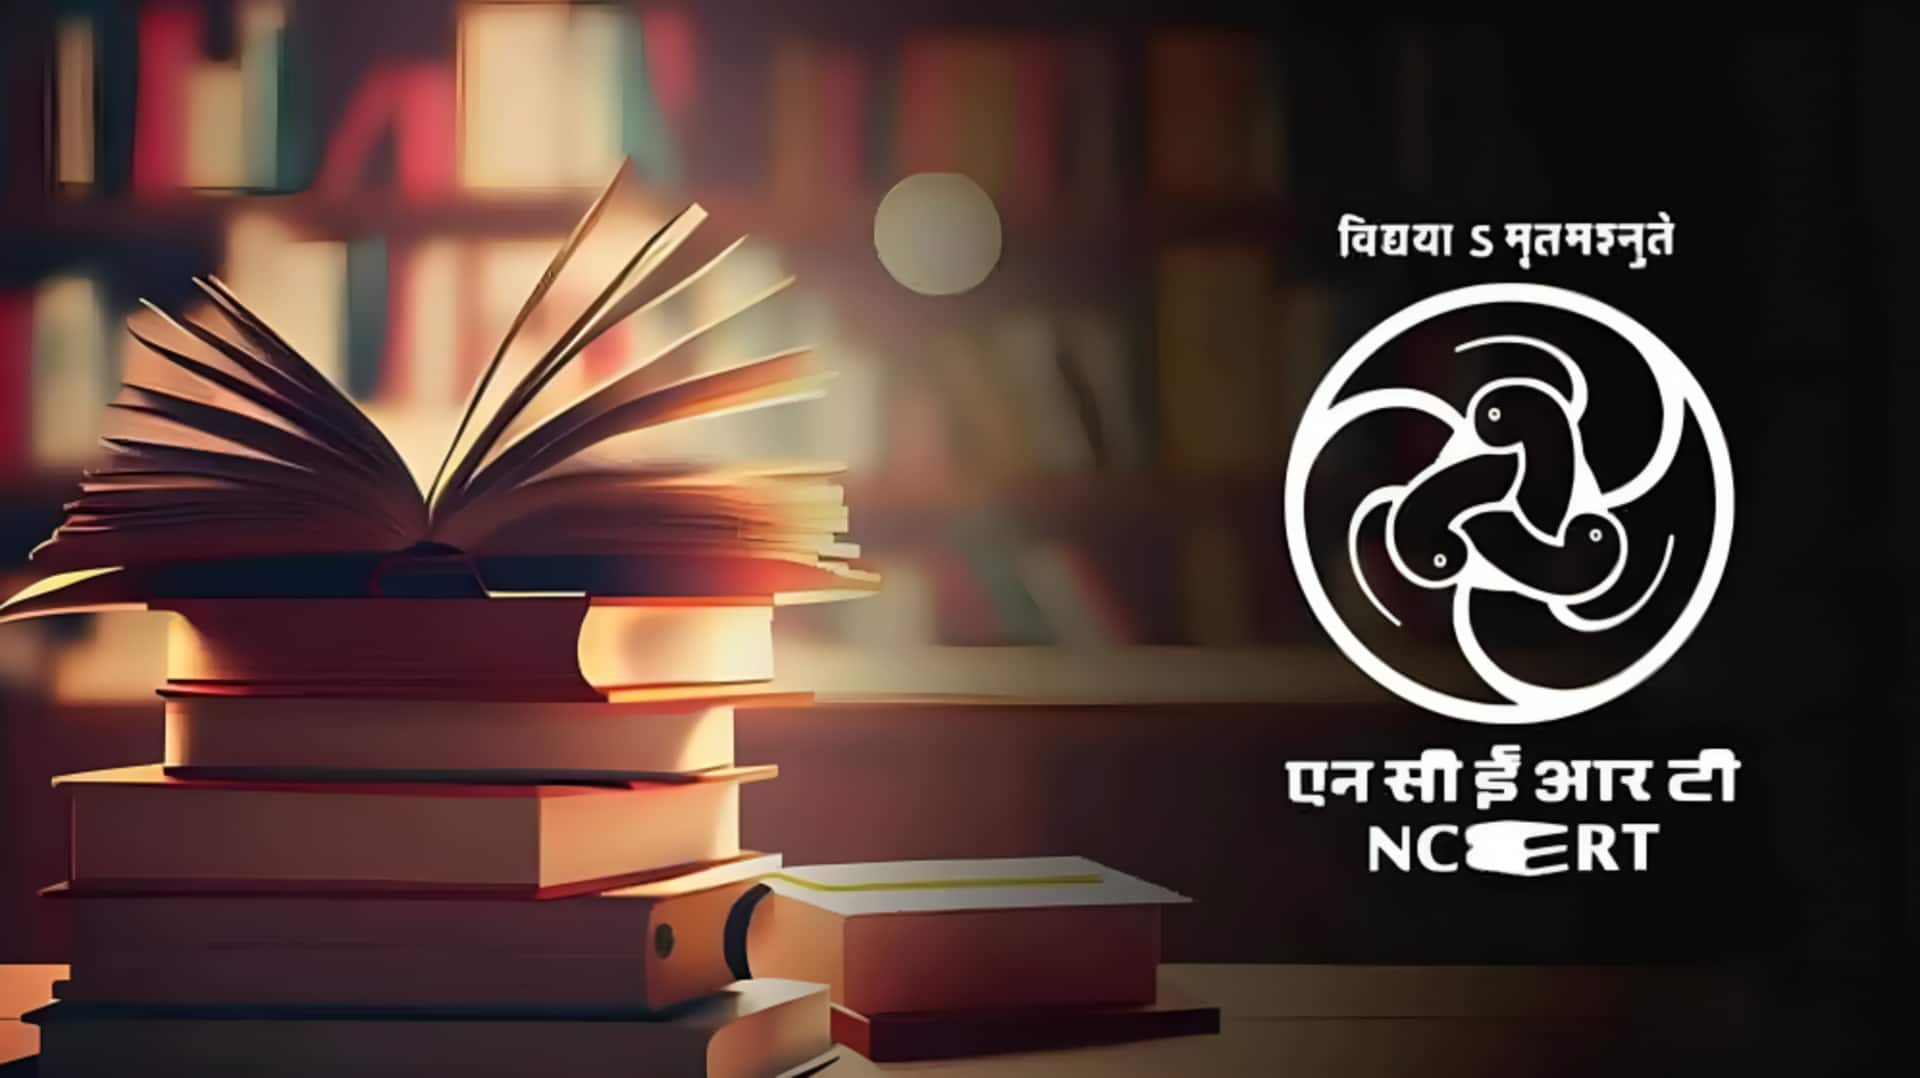 NCERT की 12वीं की किताबों में किया गया बदलाव, 'आजाद कश्मीर' शब्द हटाकर PoJK किया गया